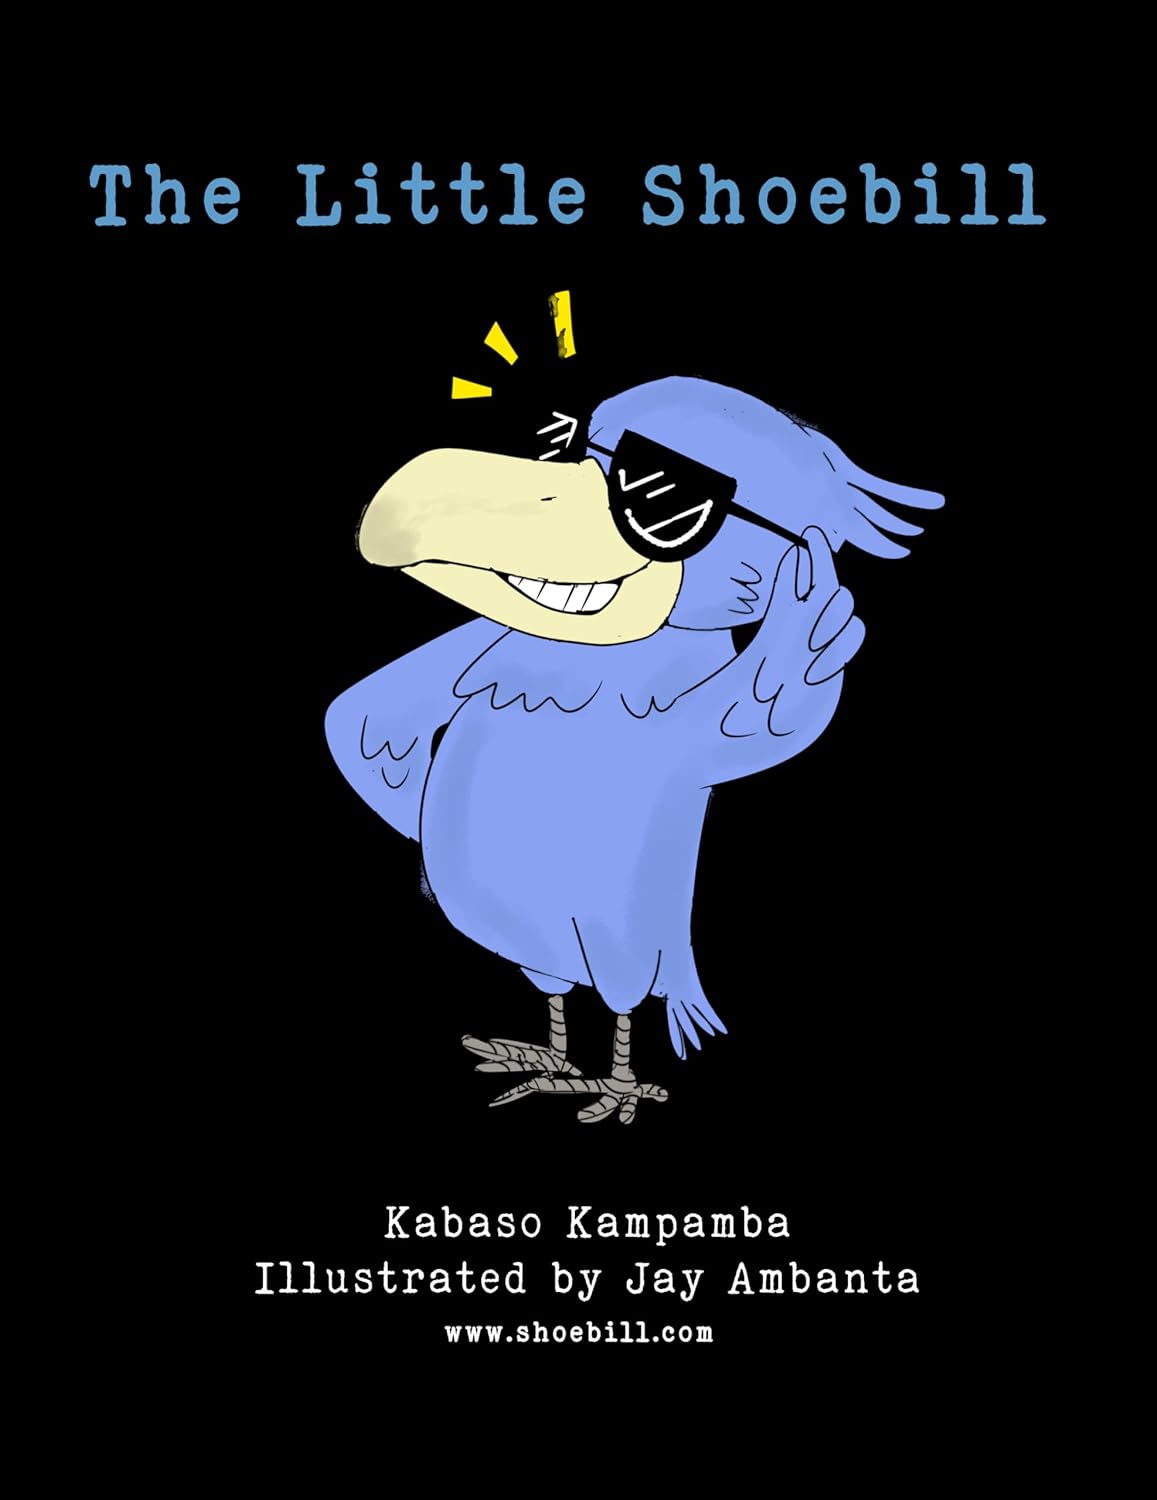 The Little Shoebill